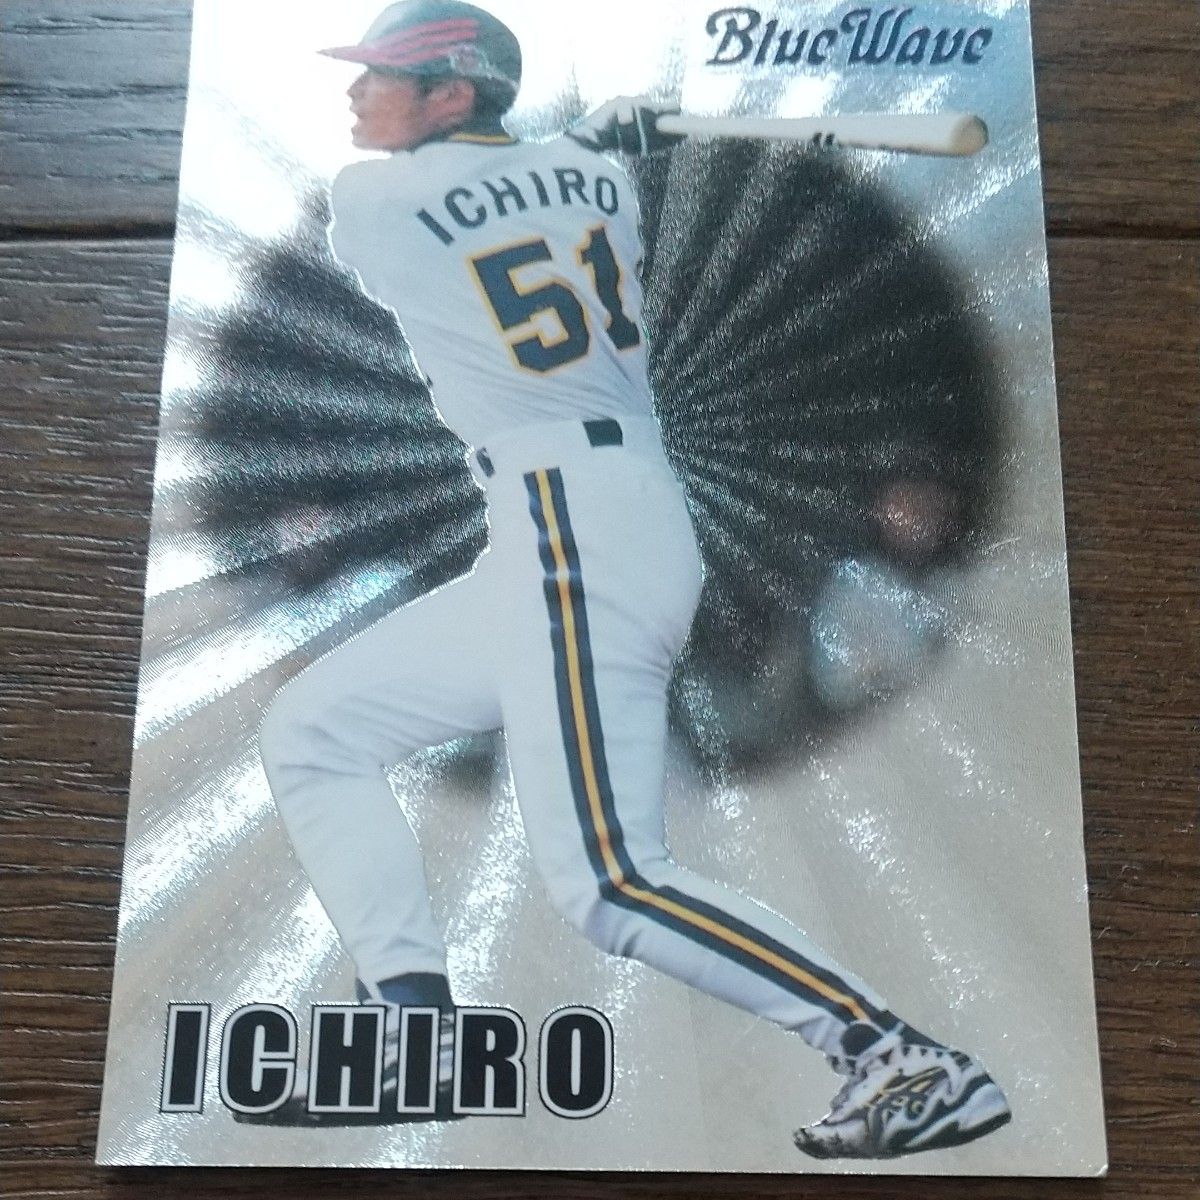 【非売品】プロ野球チップスカード2000 スペシャルカードセットVol.1 12枚セット キラカード カルビー